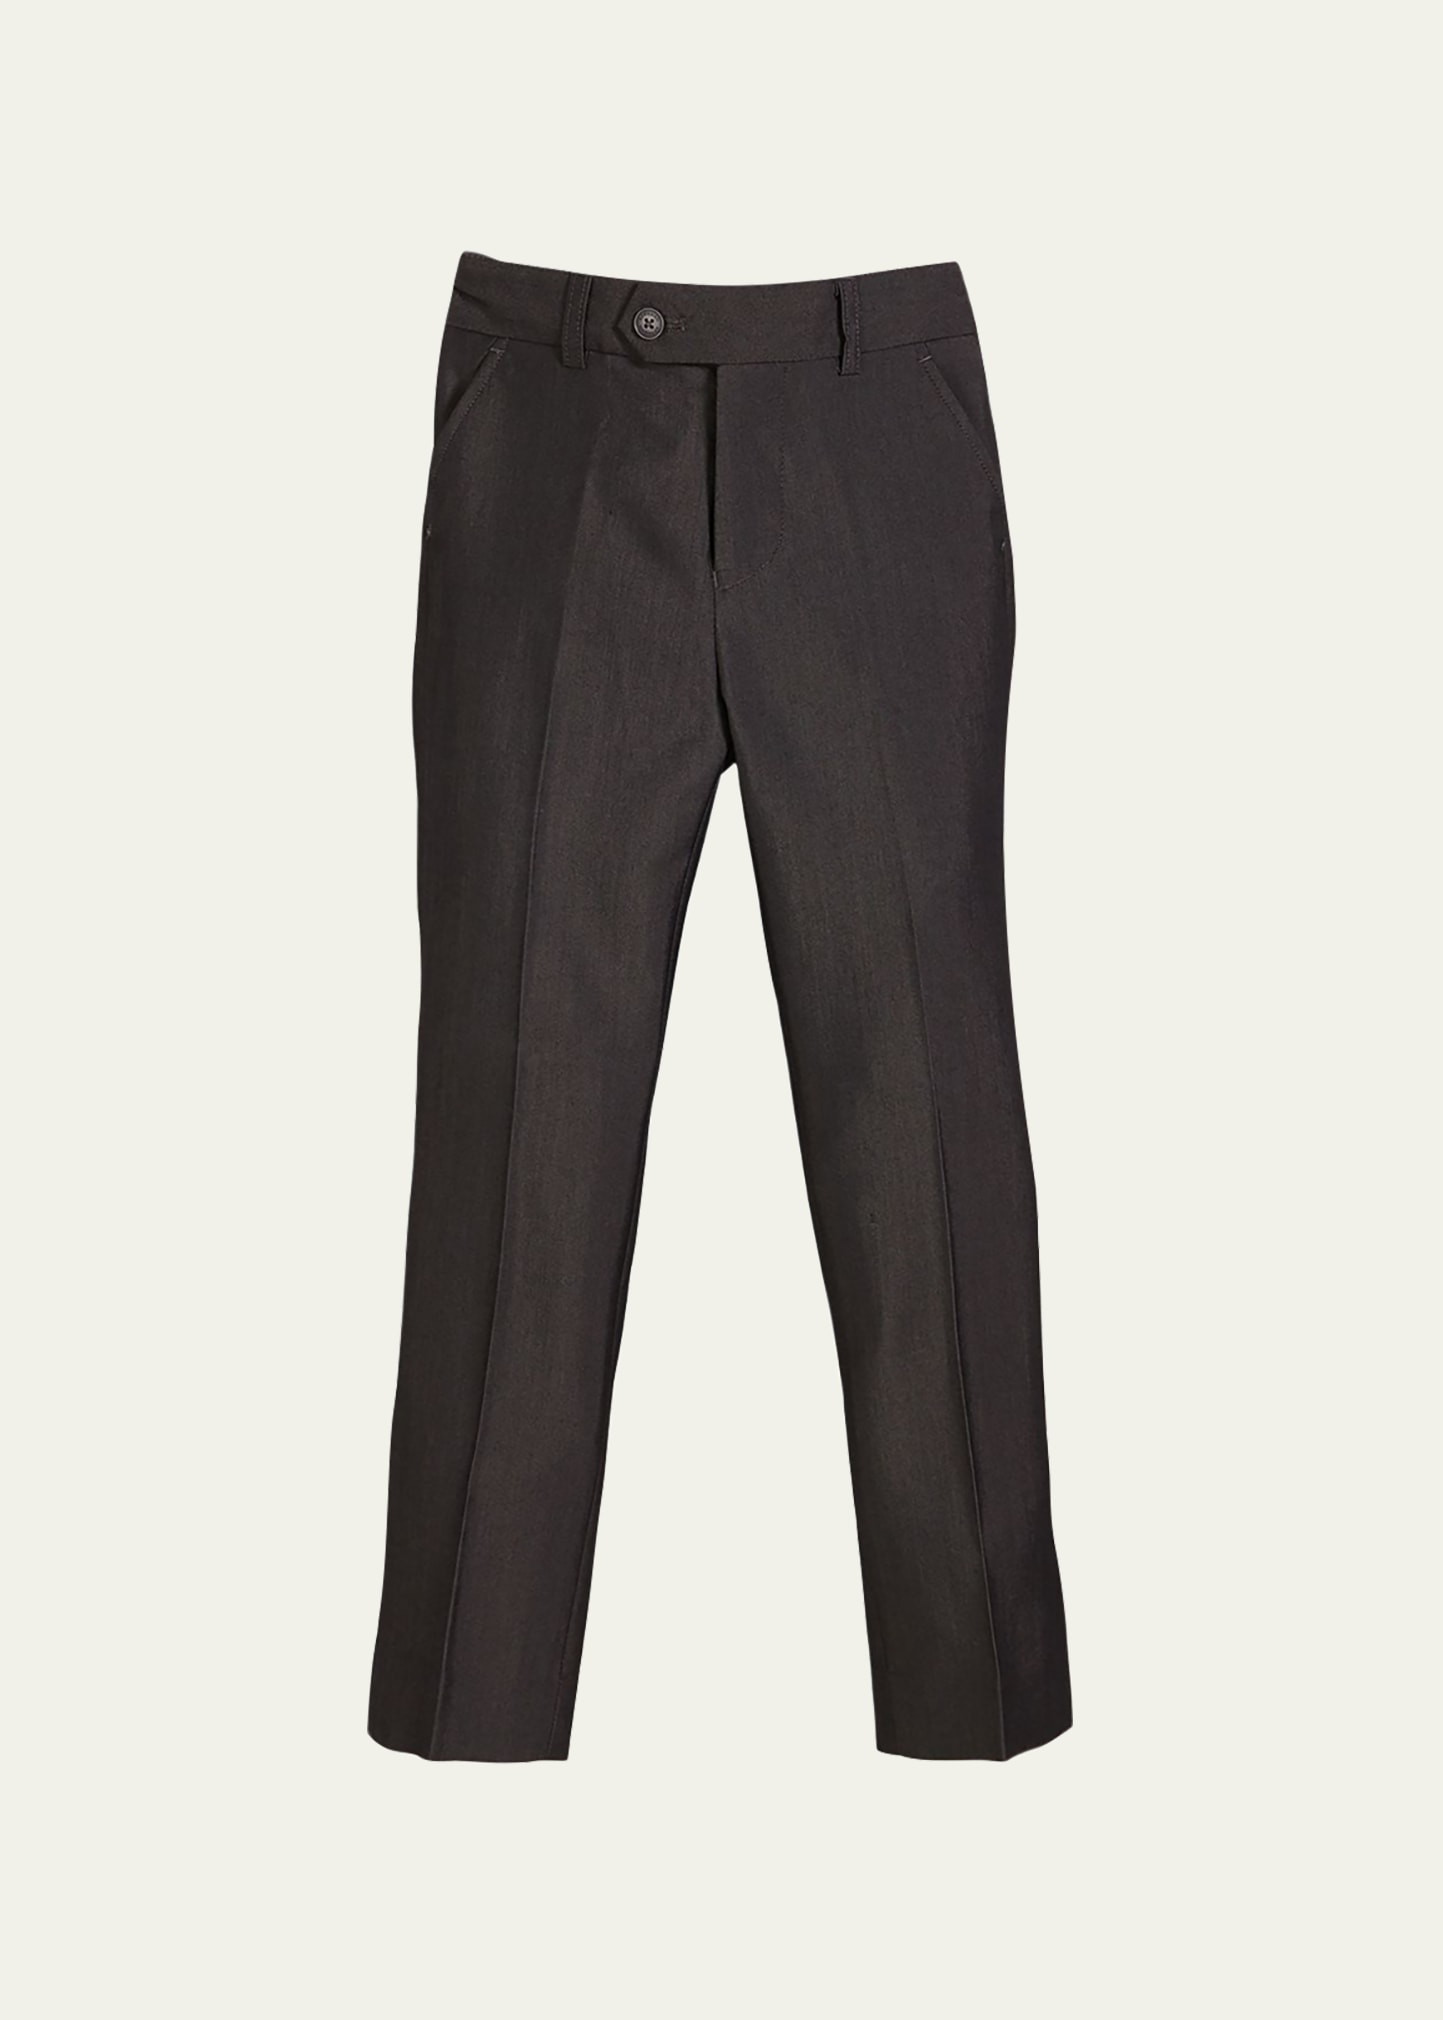 Slim Suit Pants, Charcoal, Size 4-14